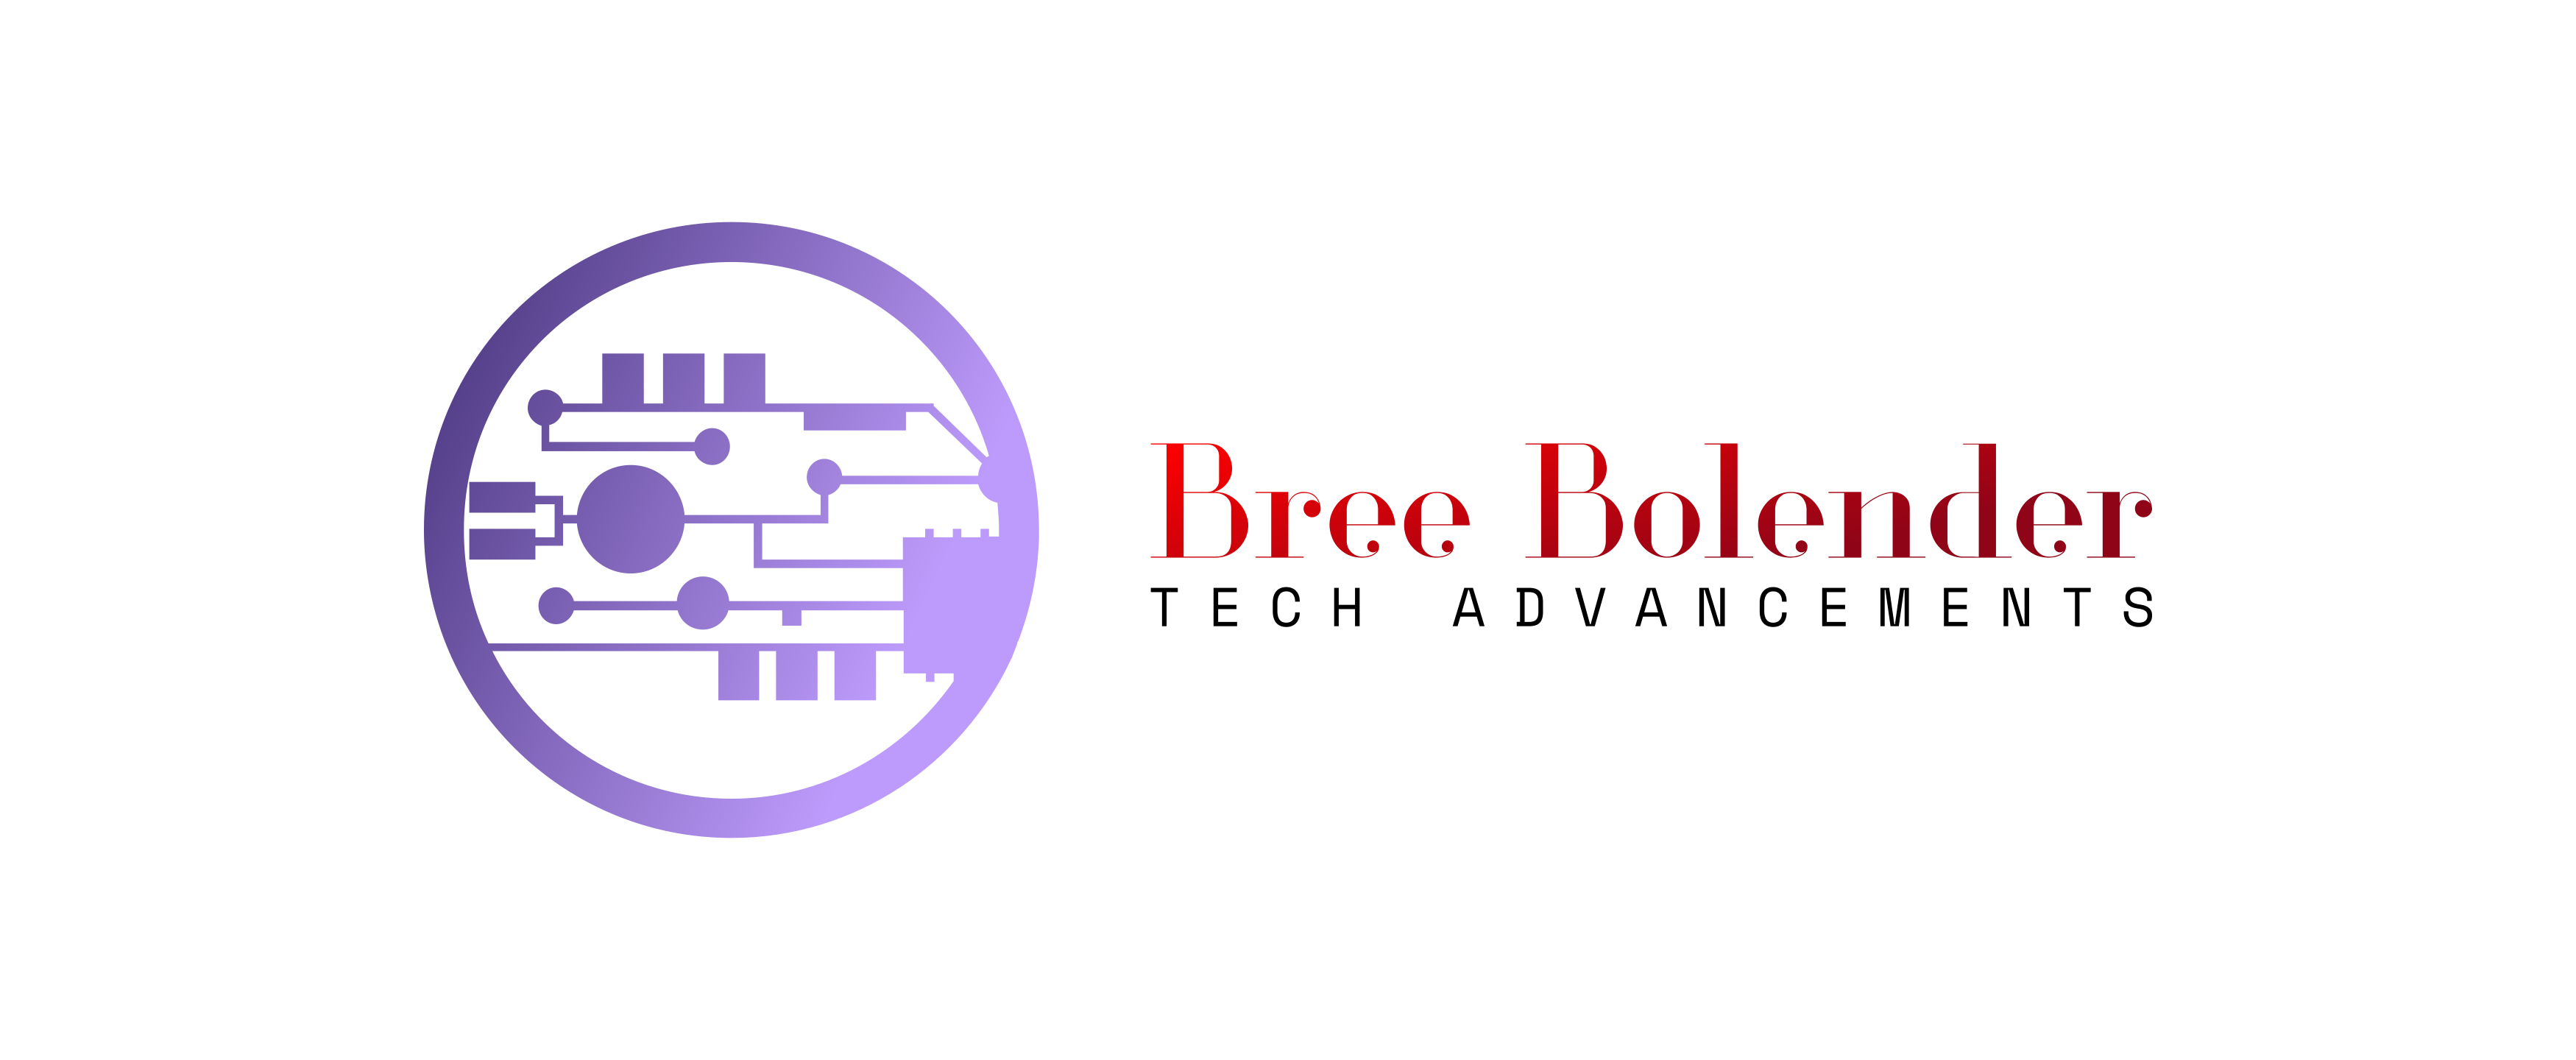 Bree Bolender